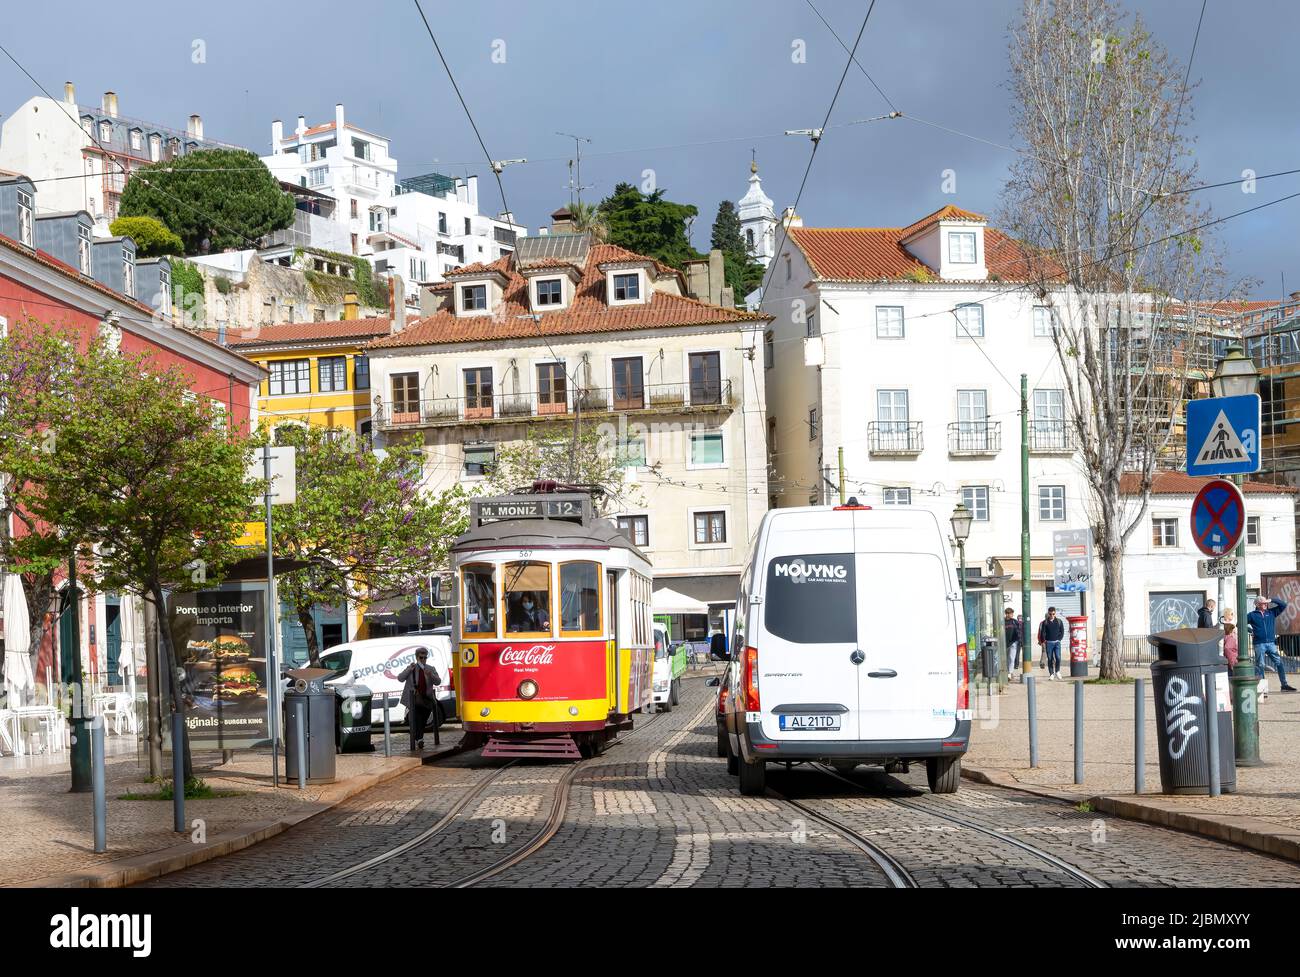 Ein weißer Lieferwagen fährt an einer roten Straßenbahn vorbei, die Passagiere im Zentrum von Lissabon, der Hauptstadt Portugals, abholt Stockfoto